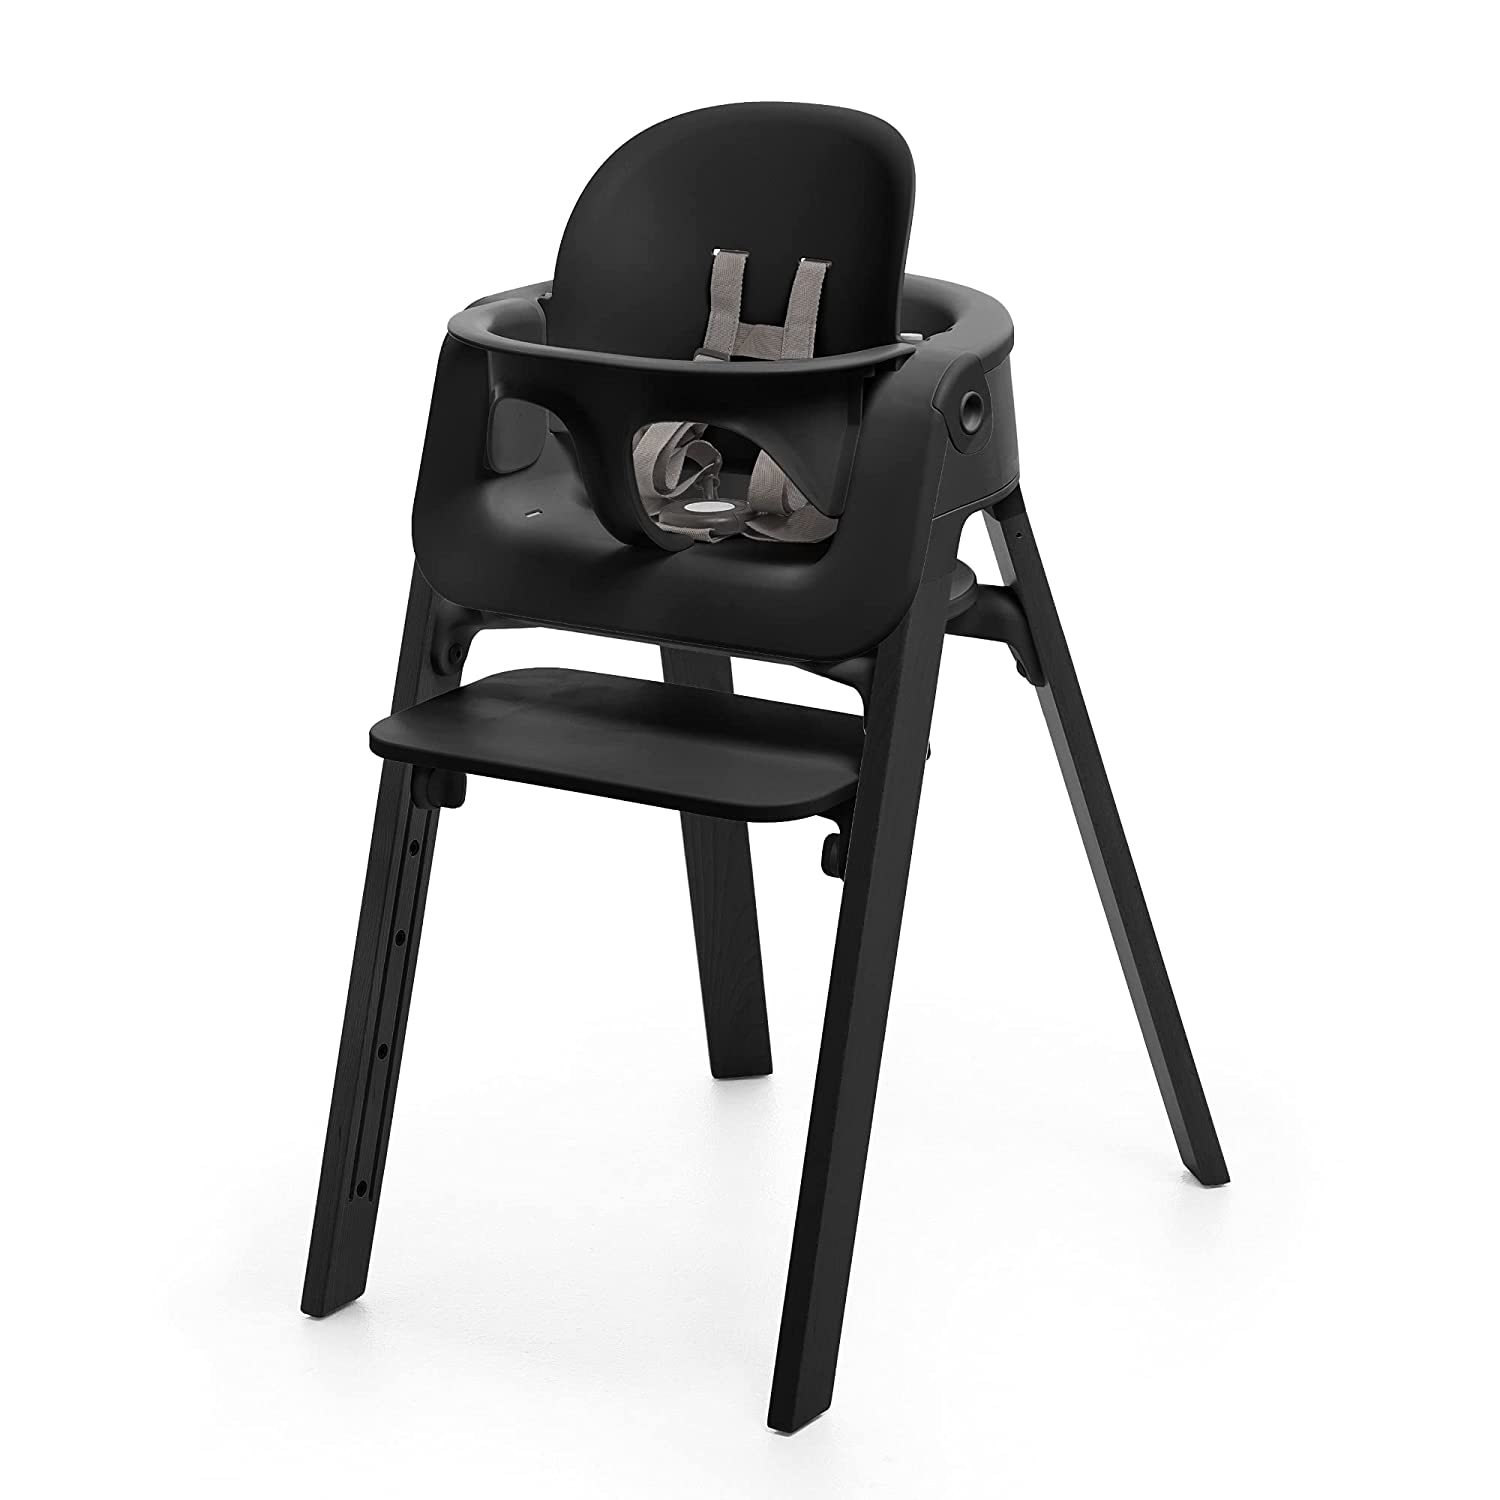 Детский стульчик-трансформер Stokke Steps, черный стульчик stokke стокке steps сидение black ножки oak black 349705